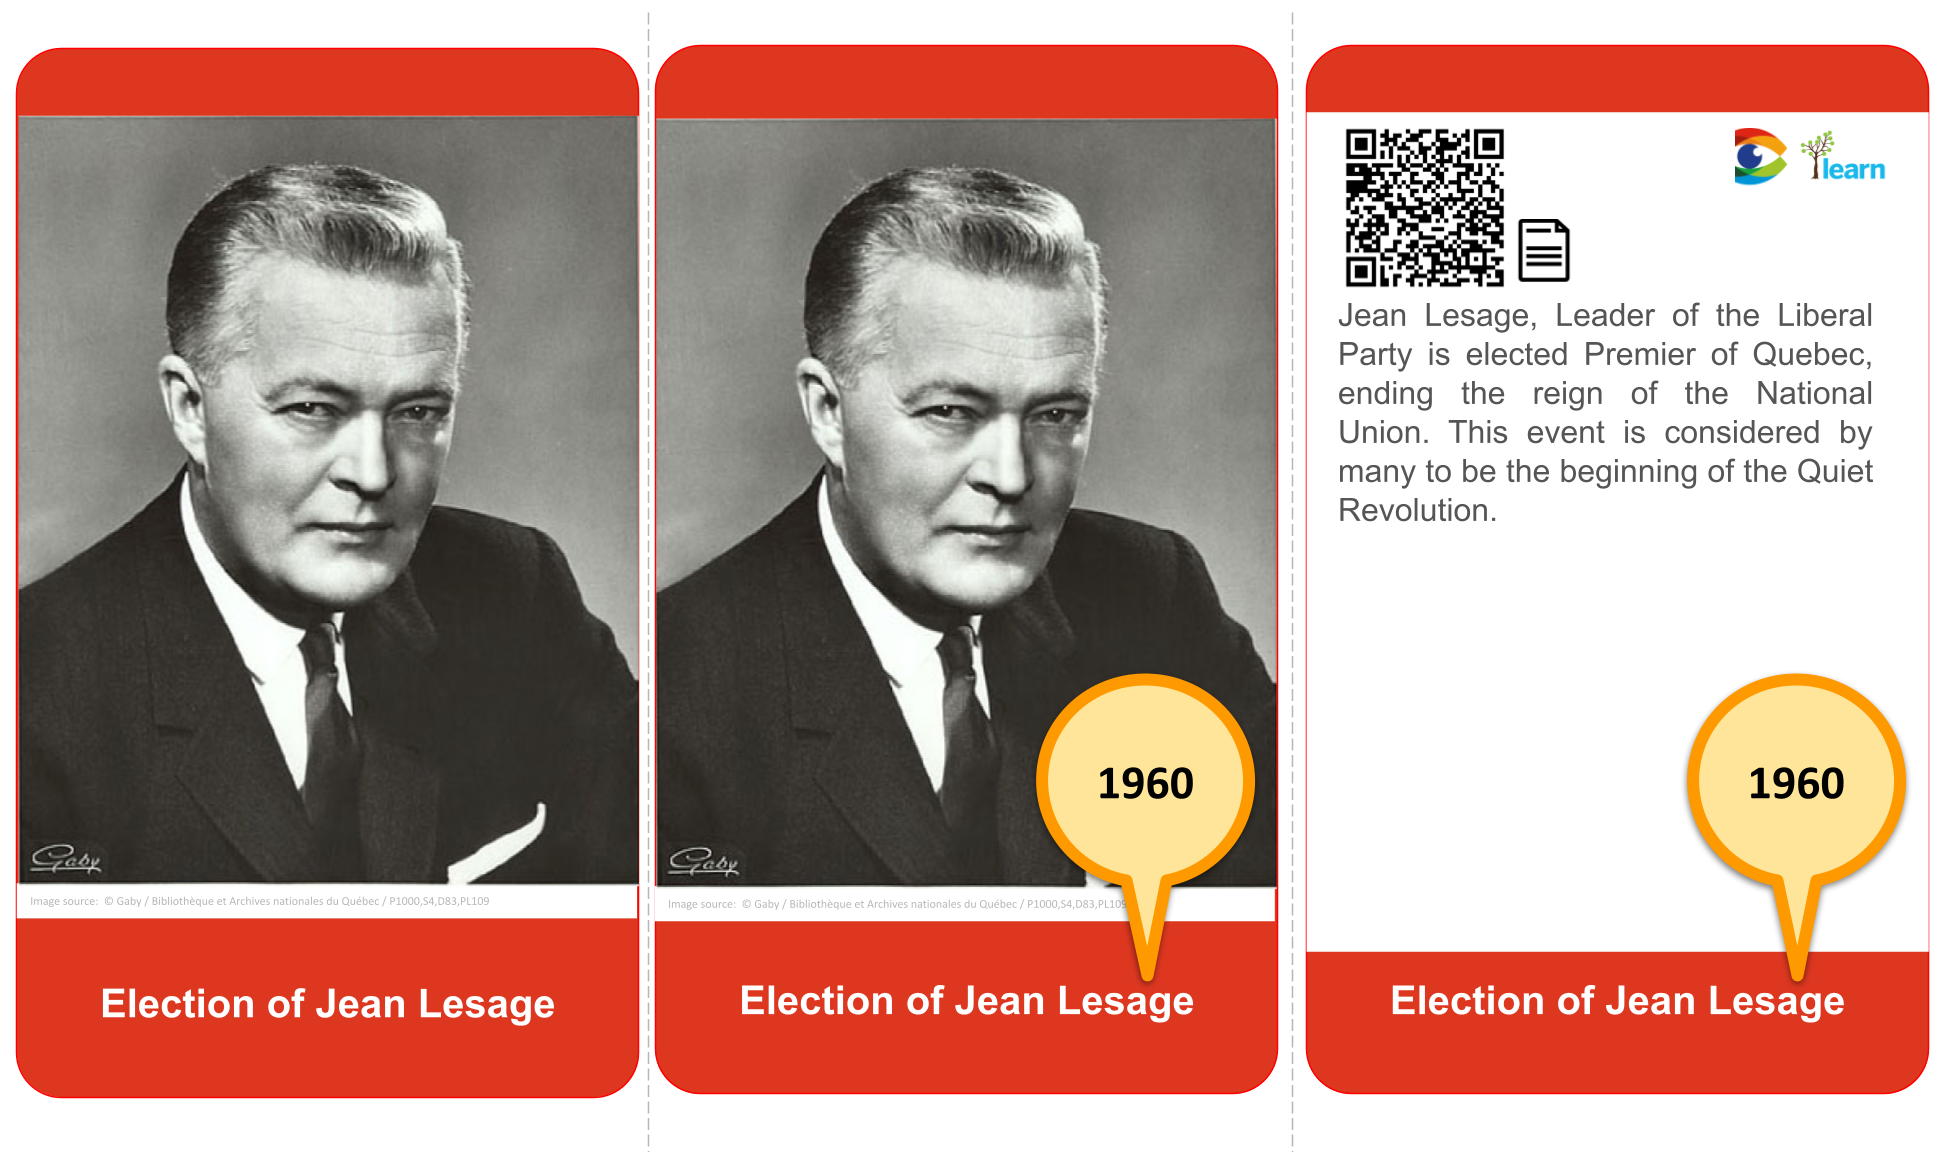 1960 Jean Lasage elected